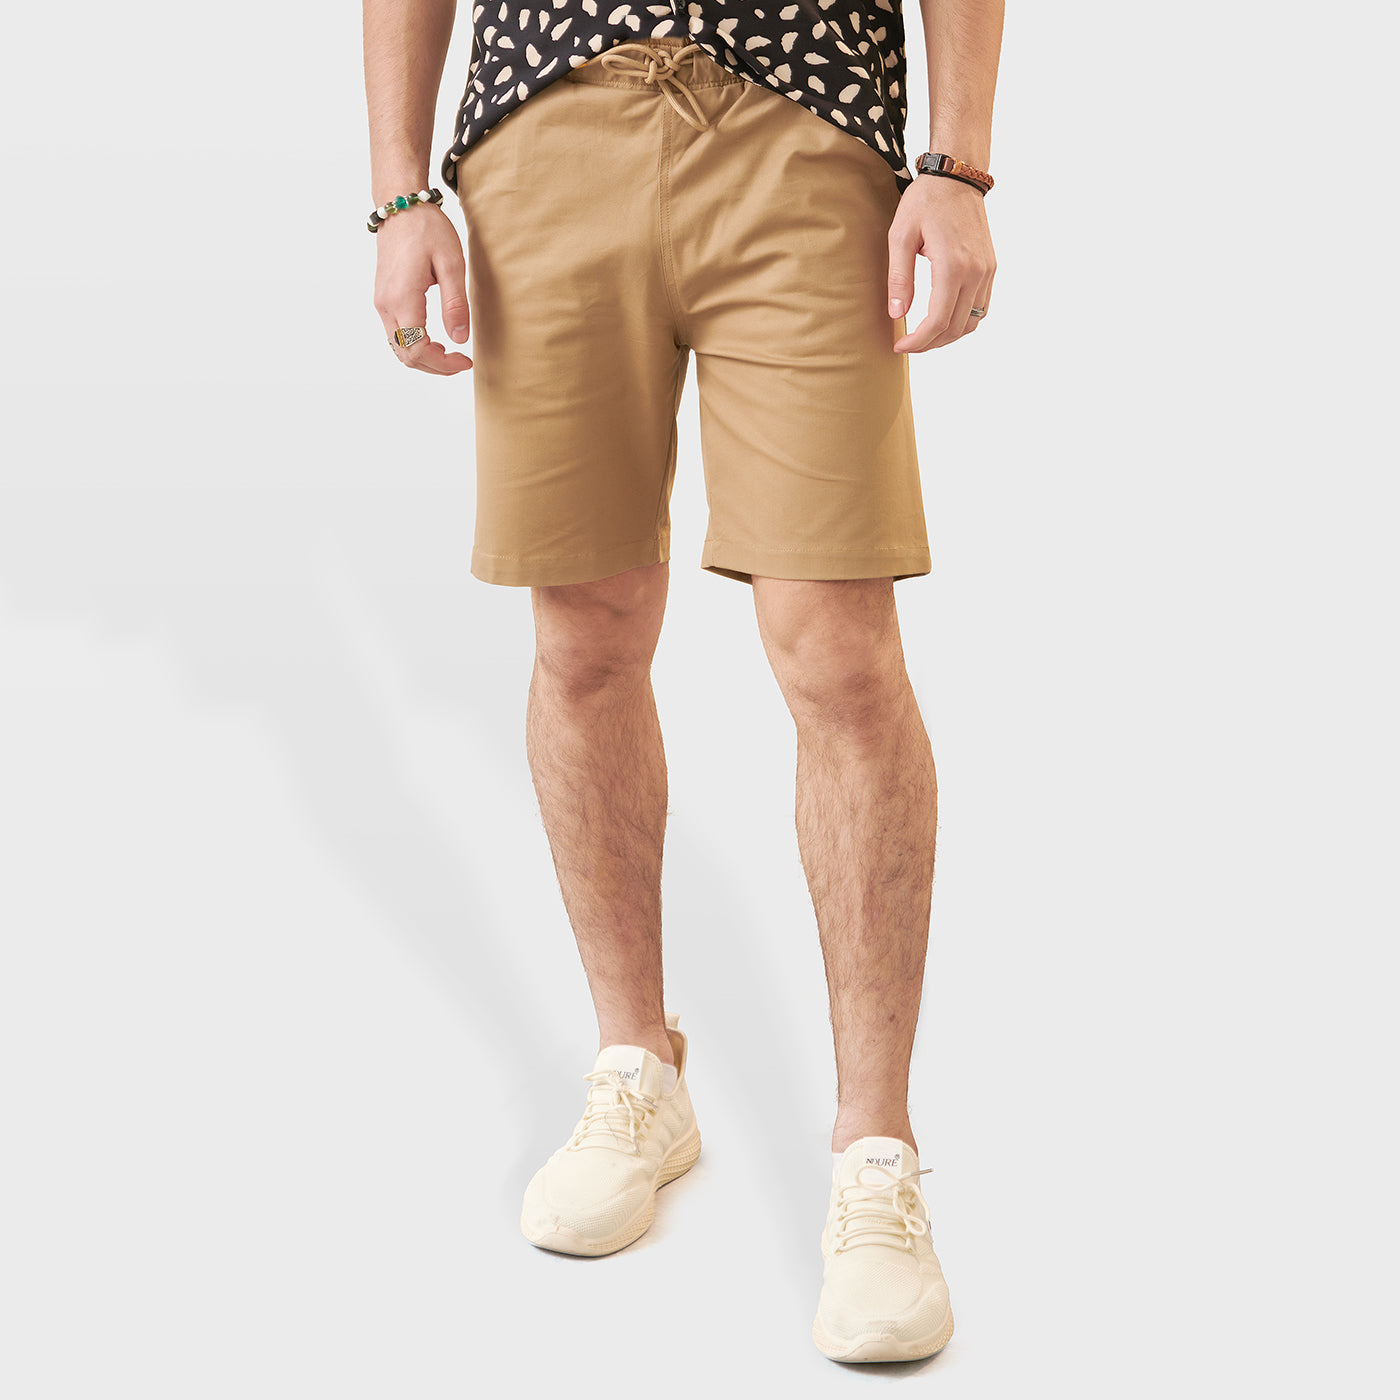 Buy KHAKI Men's Casual Chino Shorts – Ndure.com